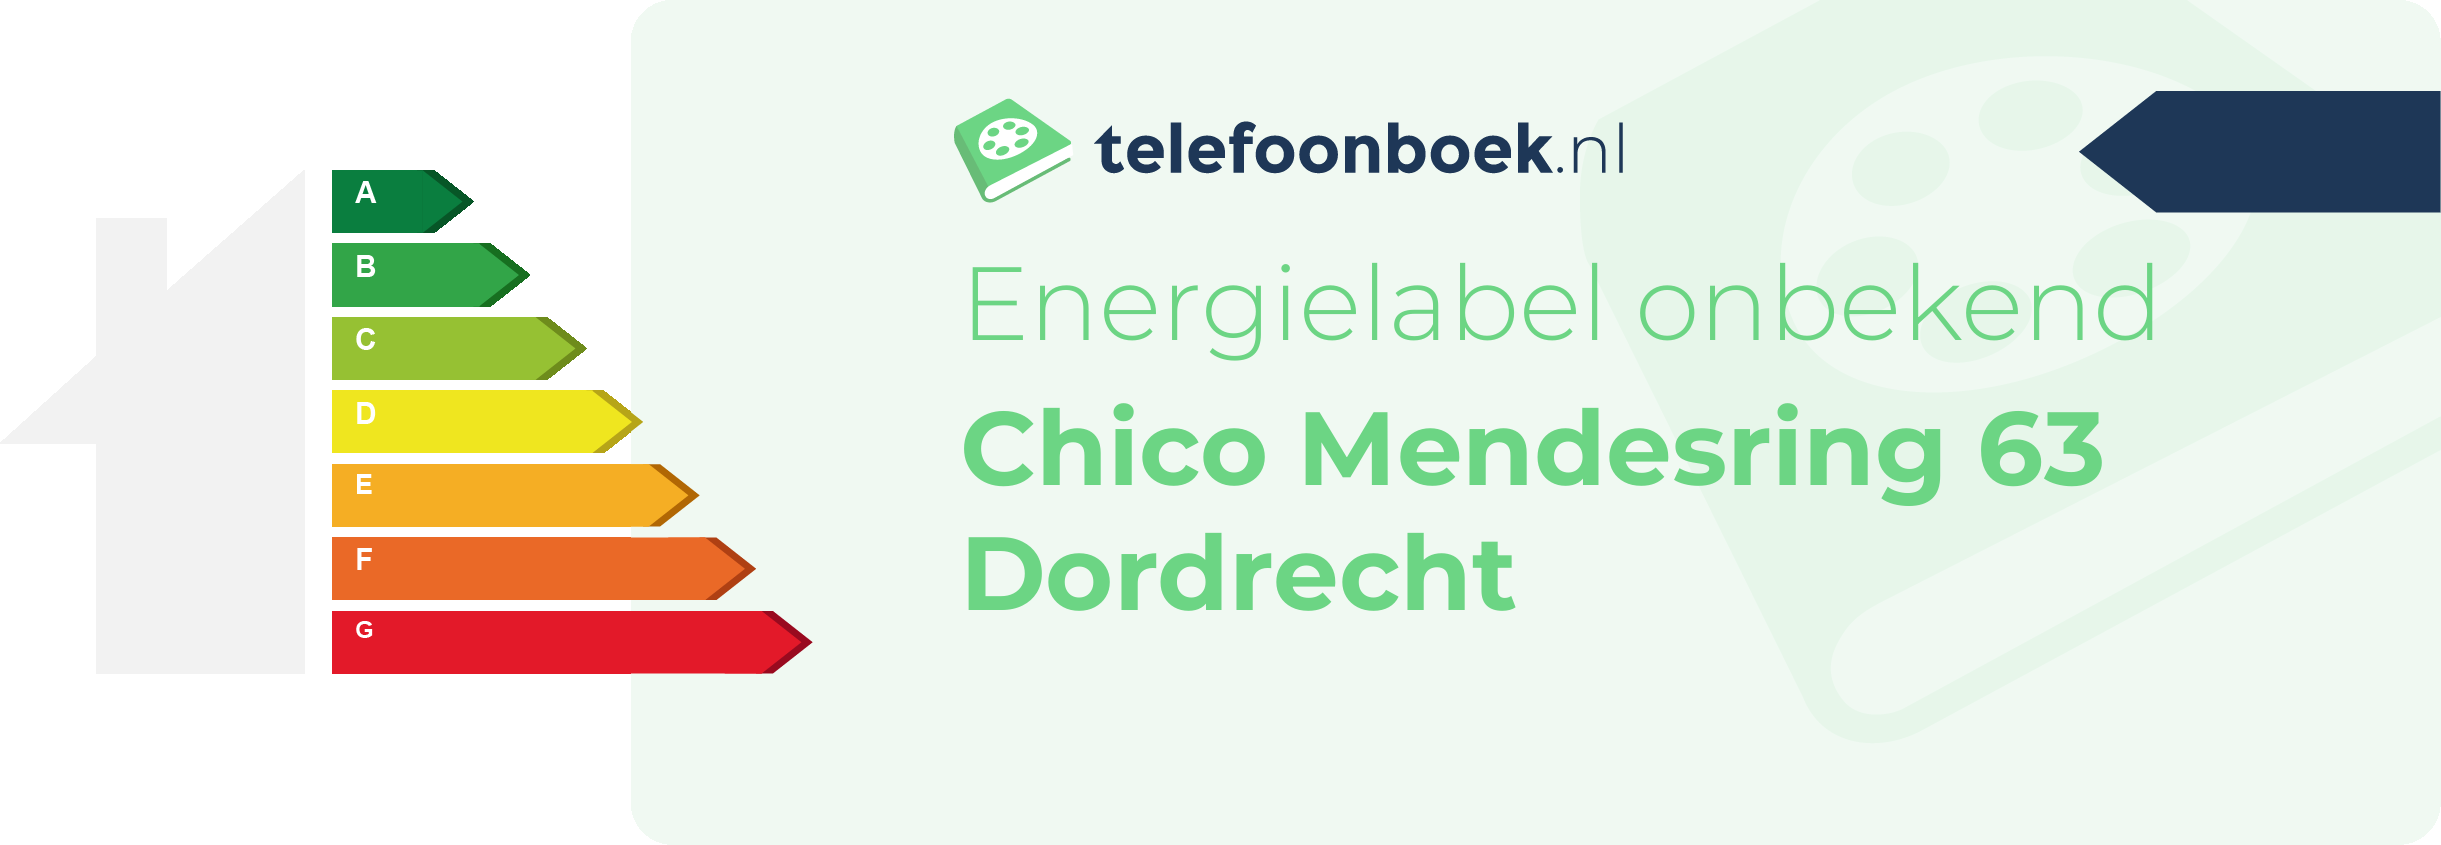 Energielabel Chico Mendesring 63 Dordrecht